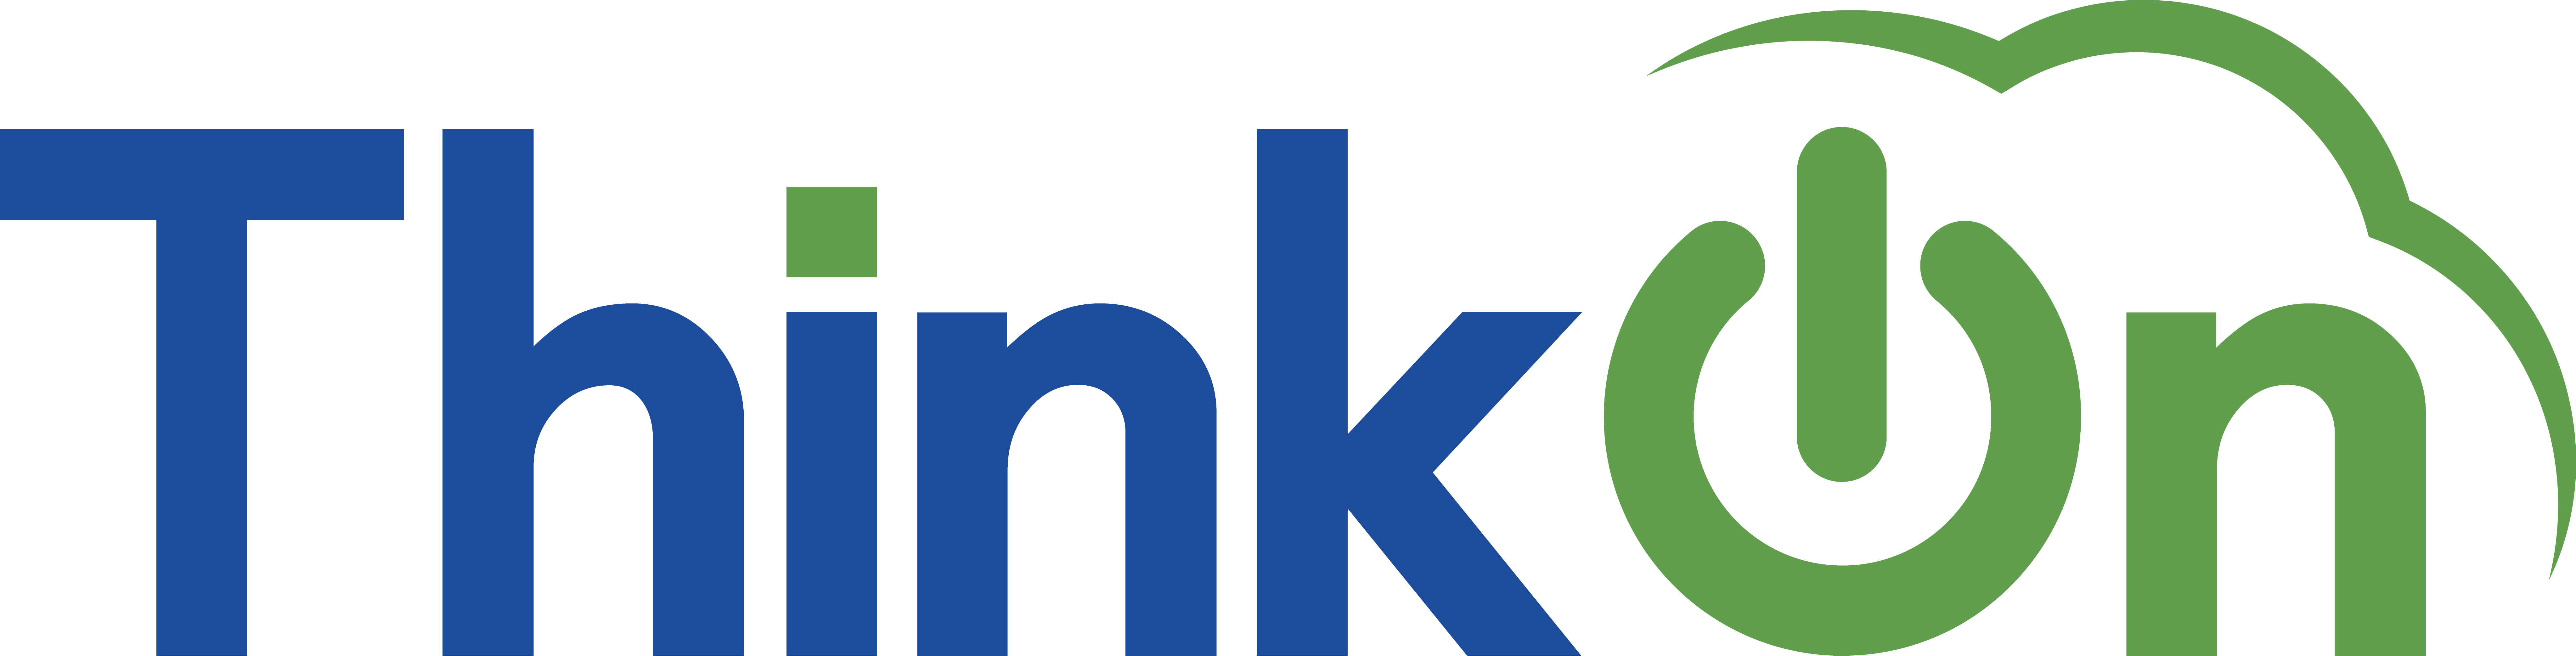 ThinkOn Logo